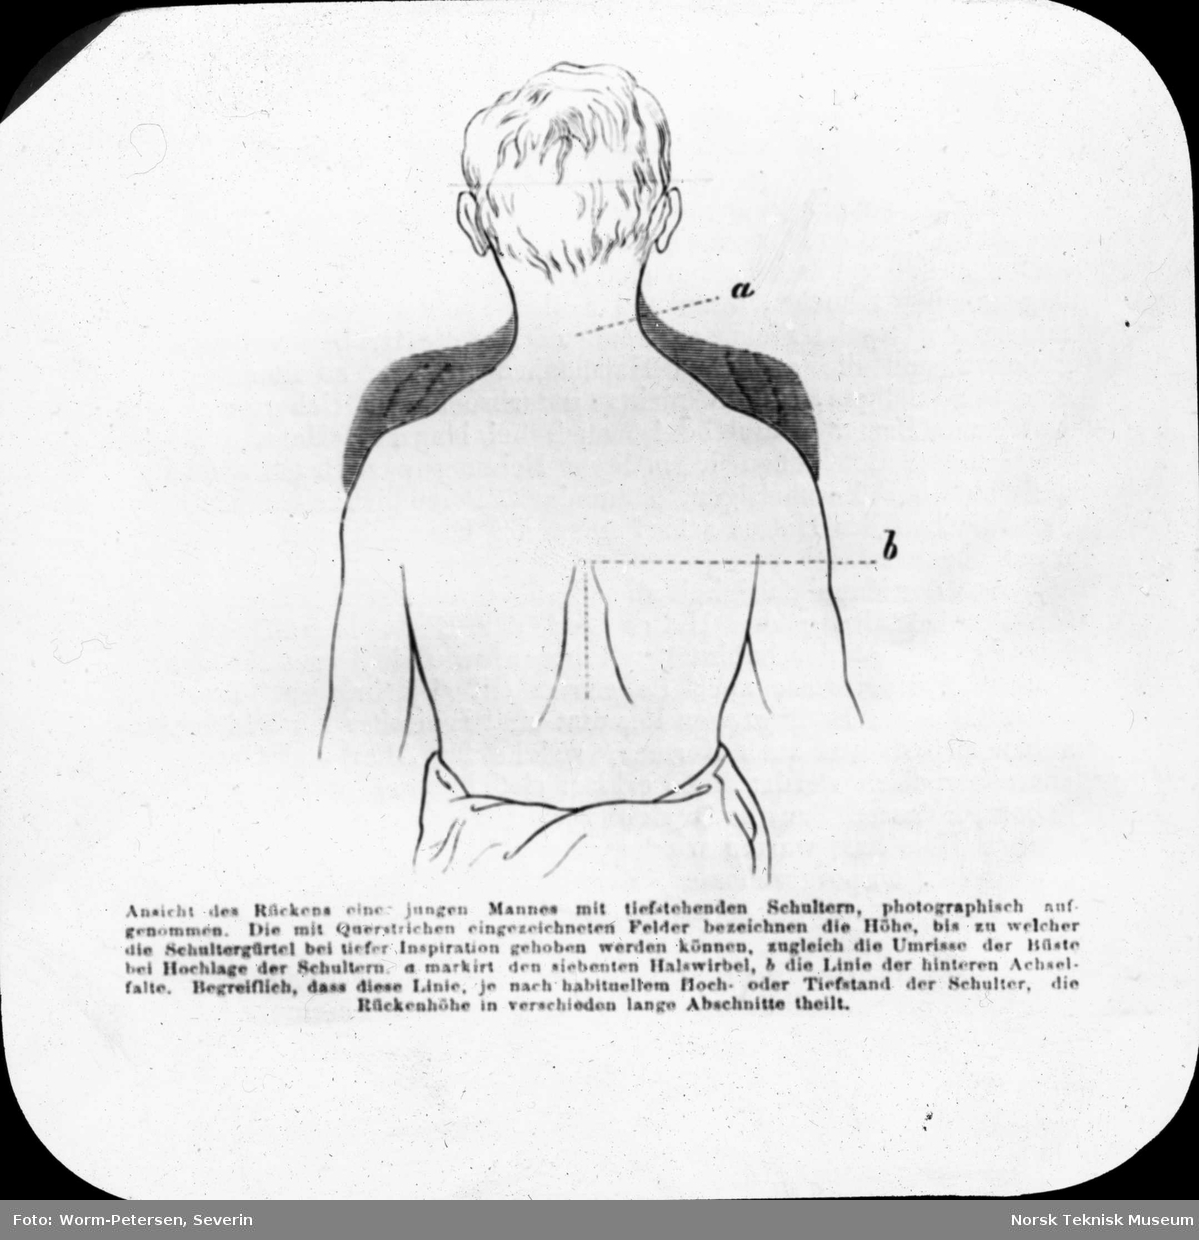 Figur anatomi, ung manns rygg